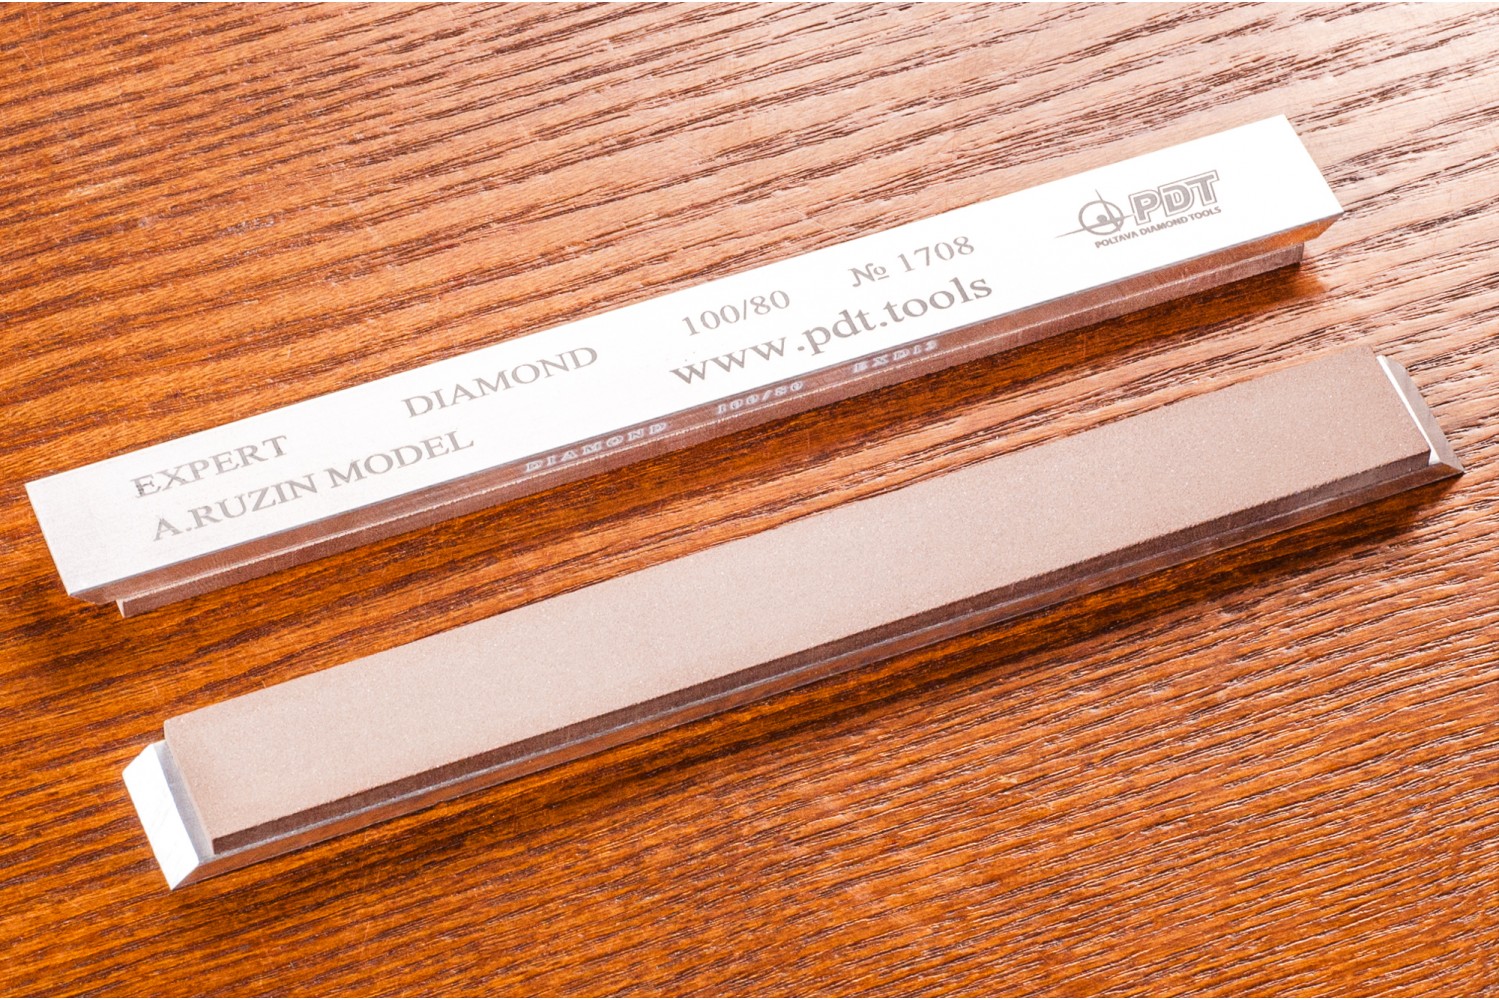 Алмазный брусок для заточки PDT EXPERT 150-17-3мм 100/80 мкм на алюминиевом бланке устройство для заточки ножей sturm